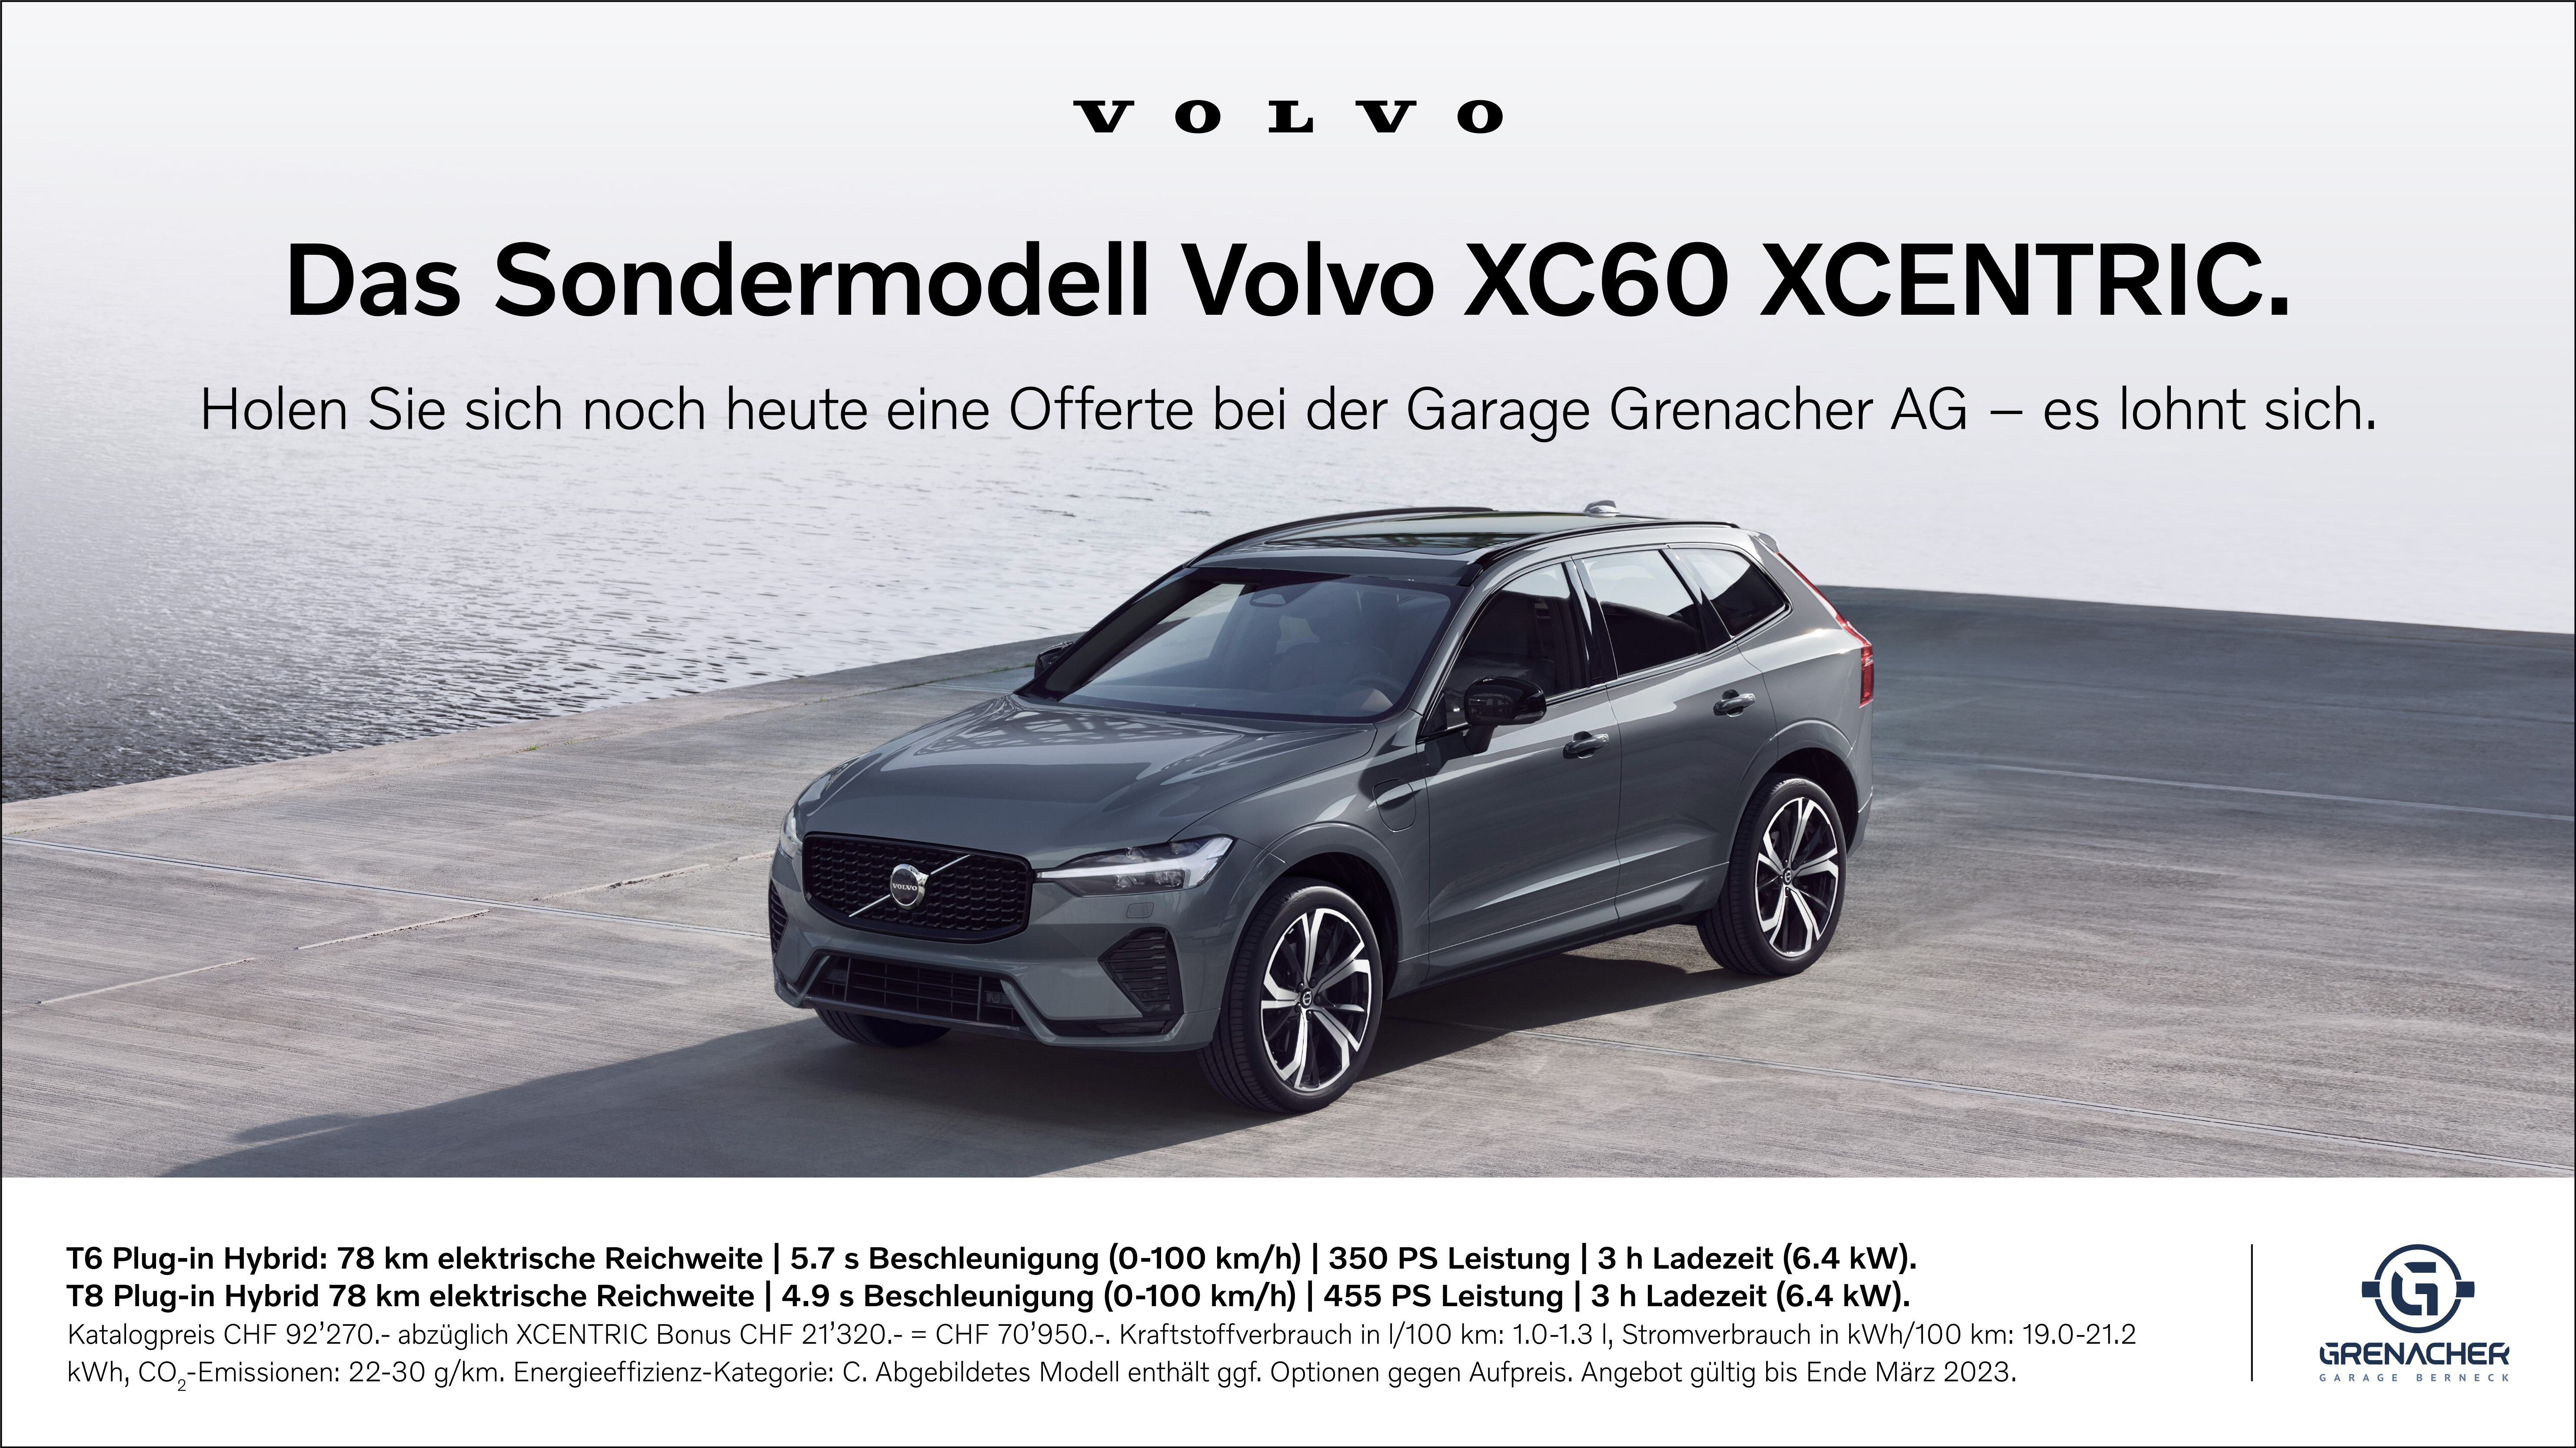 Volvo XC60 XCENTRIC